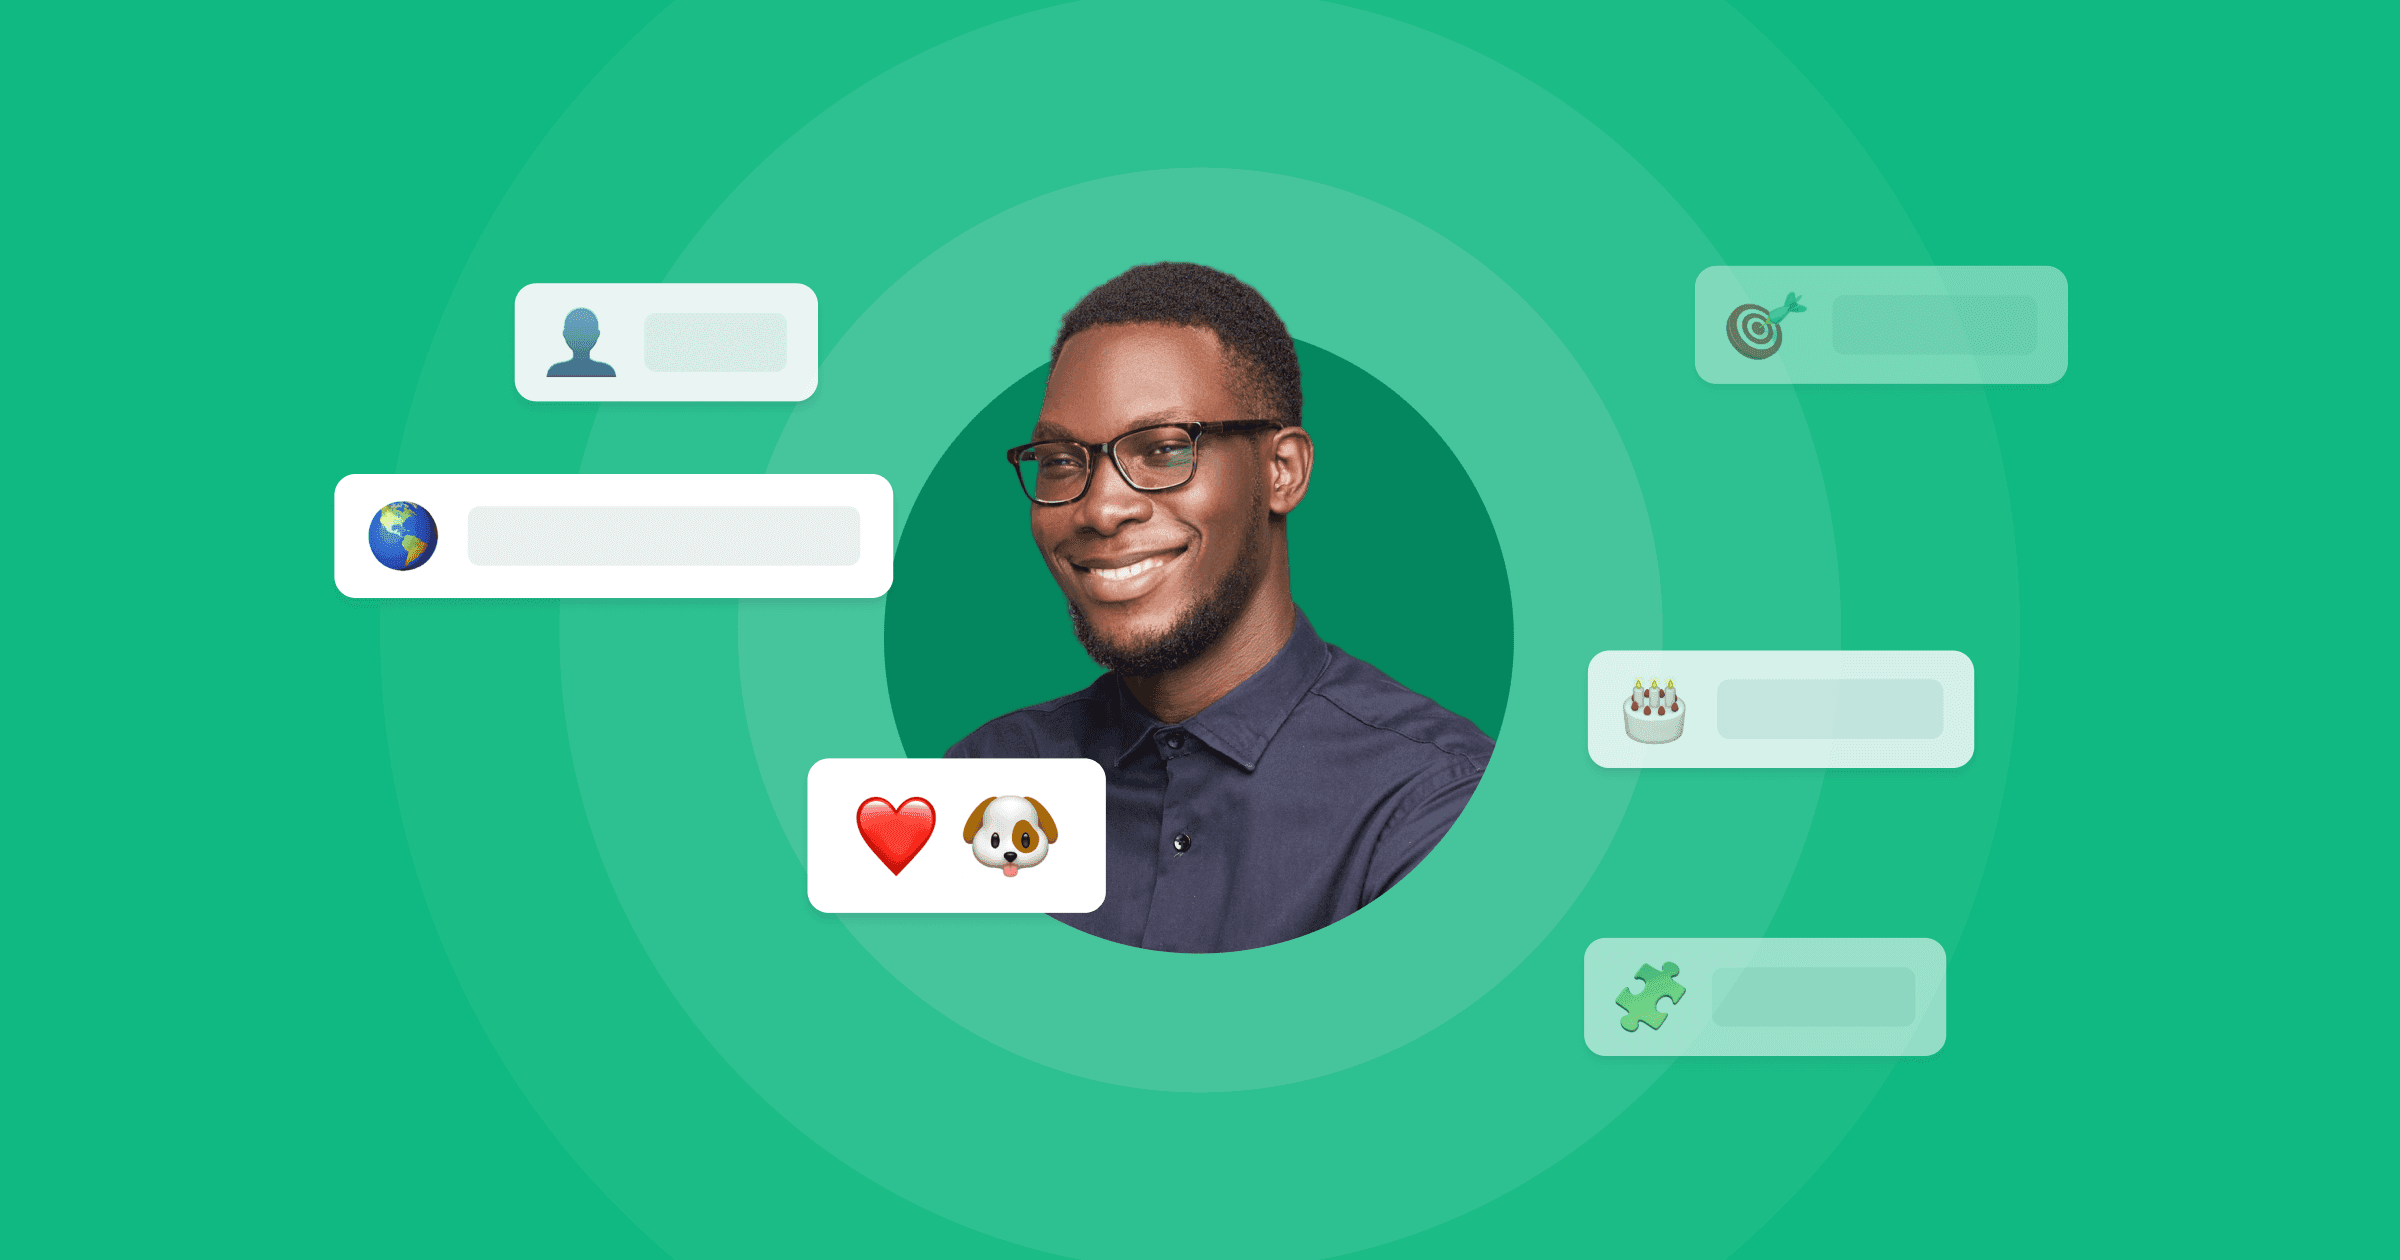 Um homem cercado por emojis que representam os atributos de seu perfil de usuário.